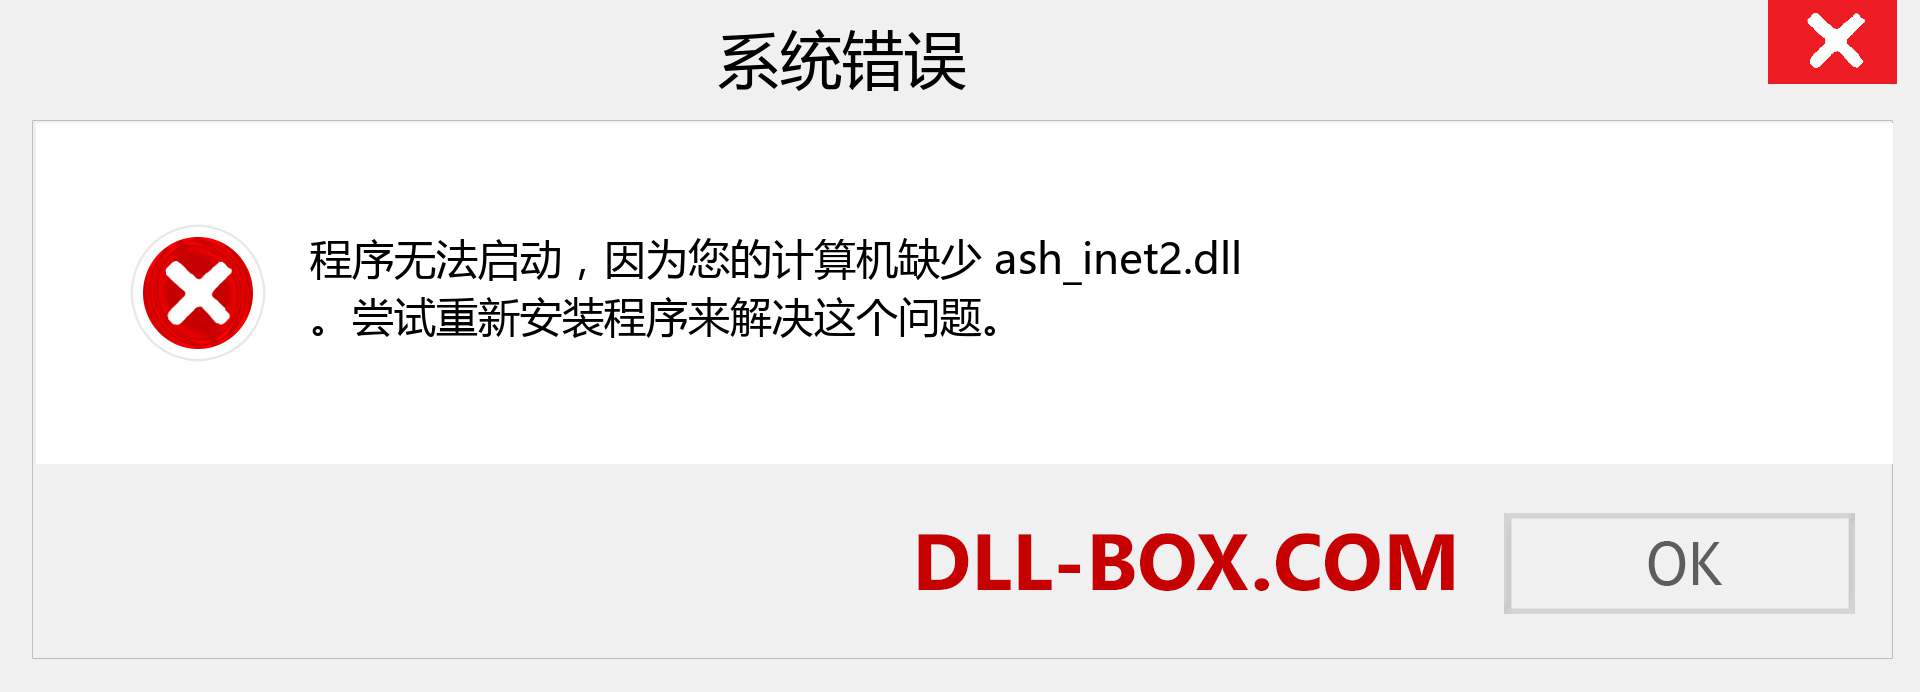 ash_inet2.dll 文件丢失？。 适用于 Windows 7、8、10 的下载 - 修复 Windows、照片、图像上的 ash_inet2 dll 丢失错误